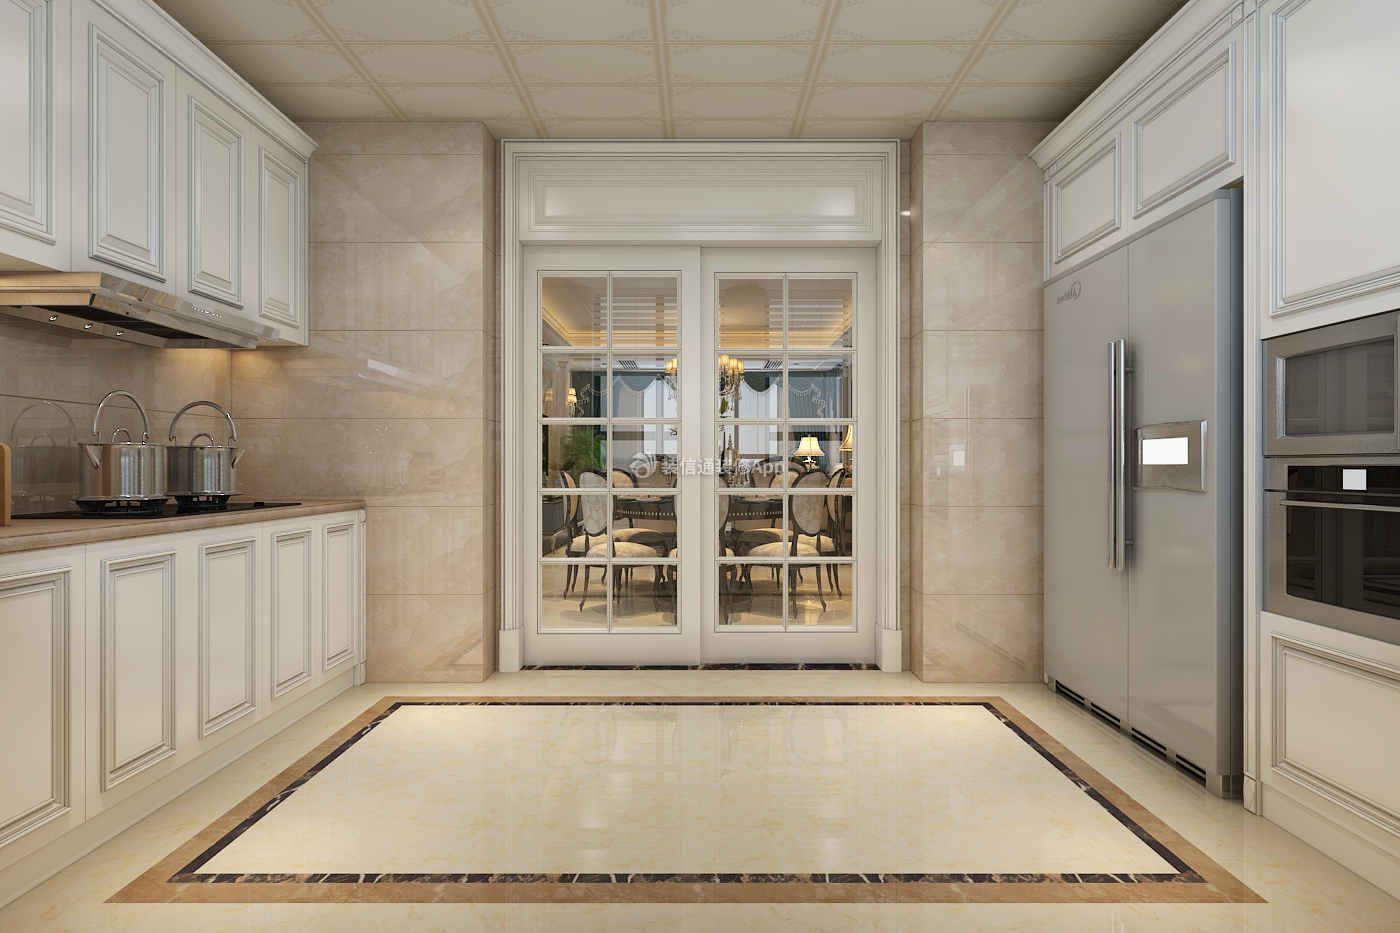 高速时代城170平欧式风格家庭厨房设计效果图片